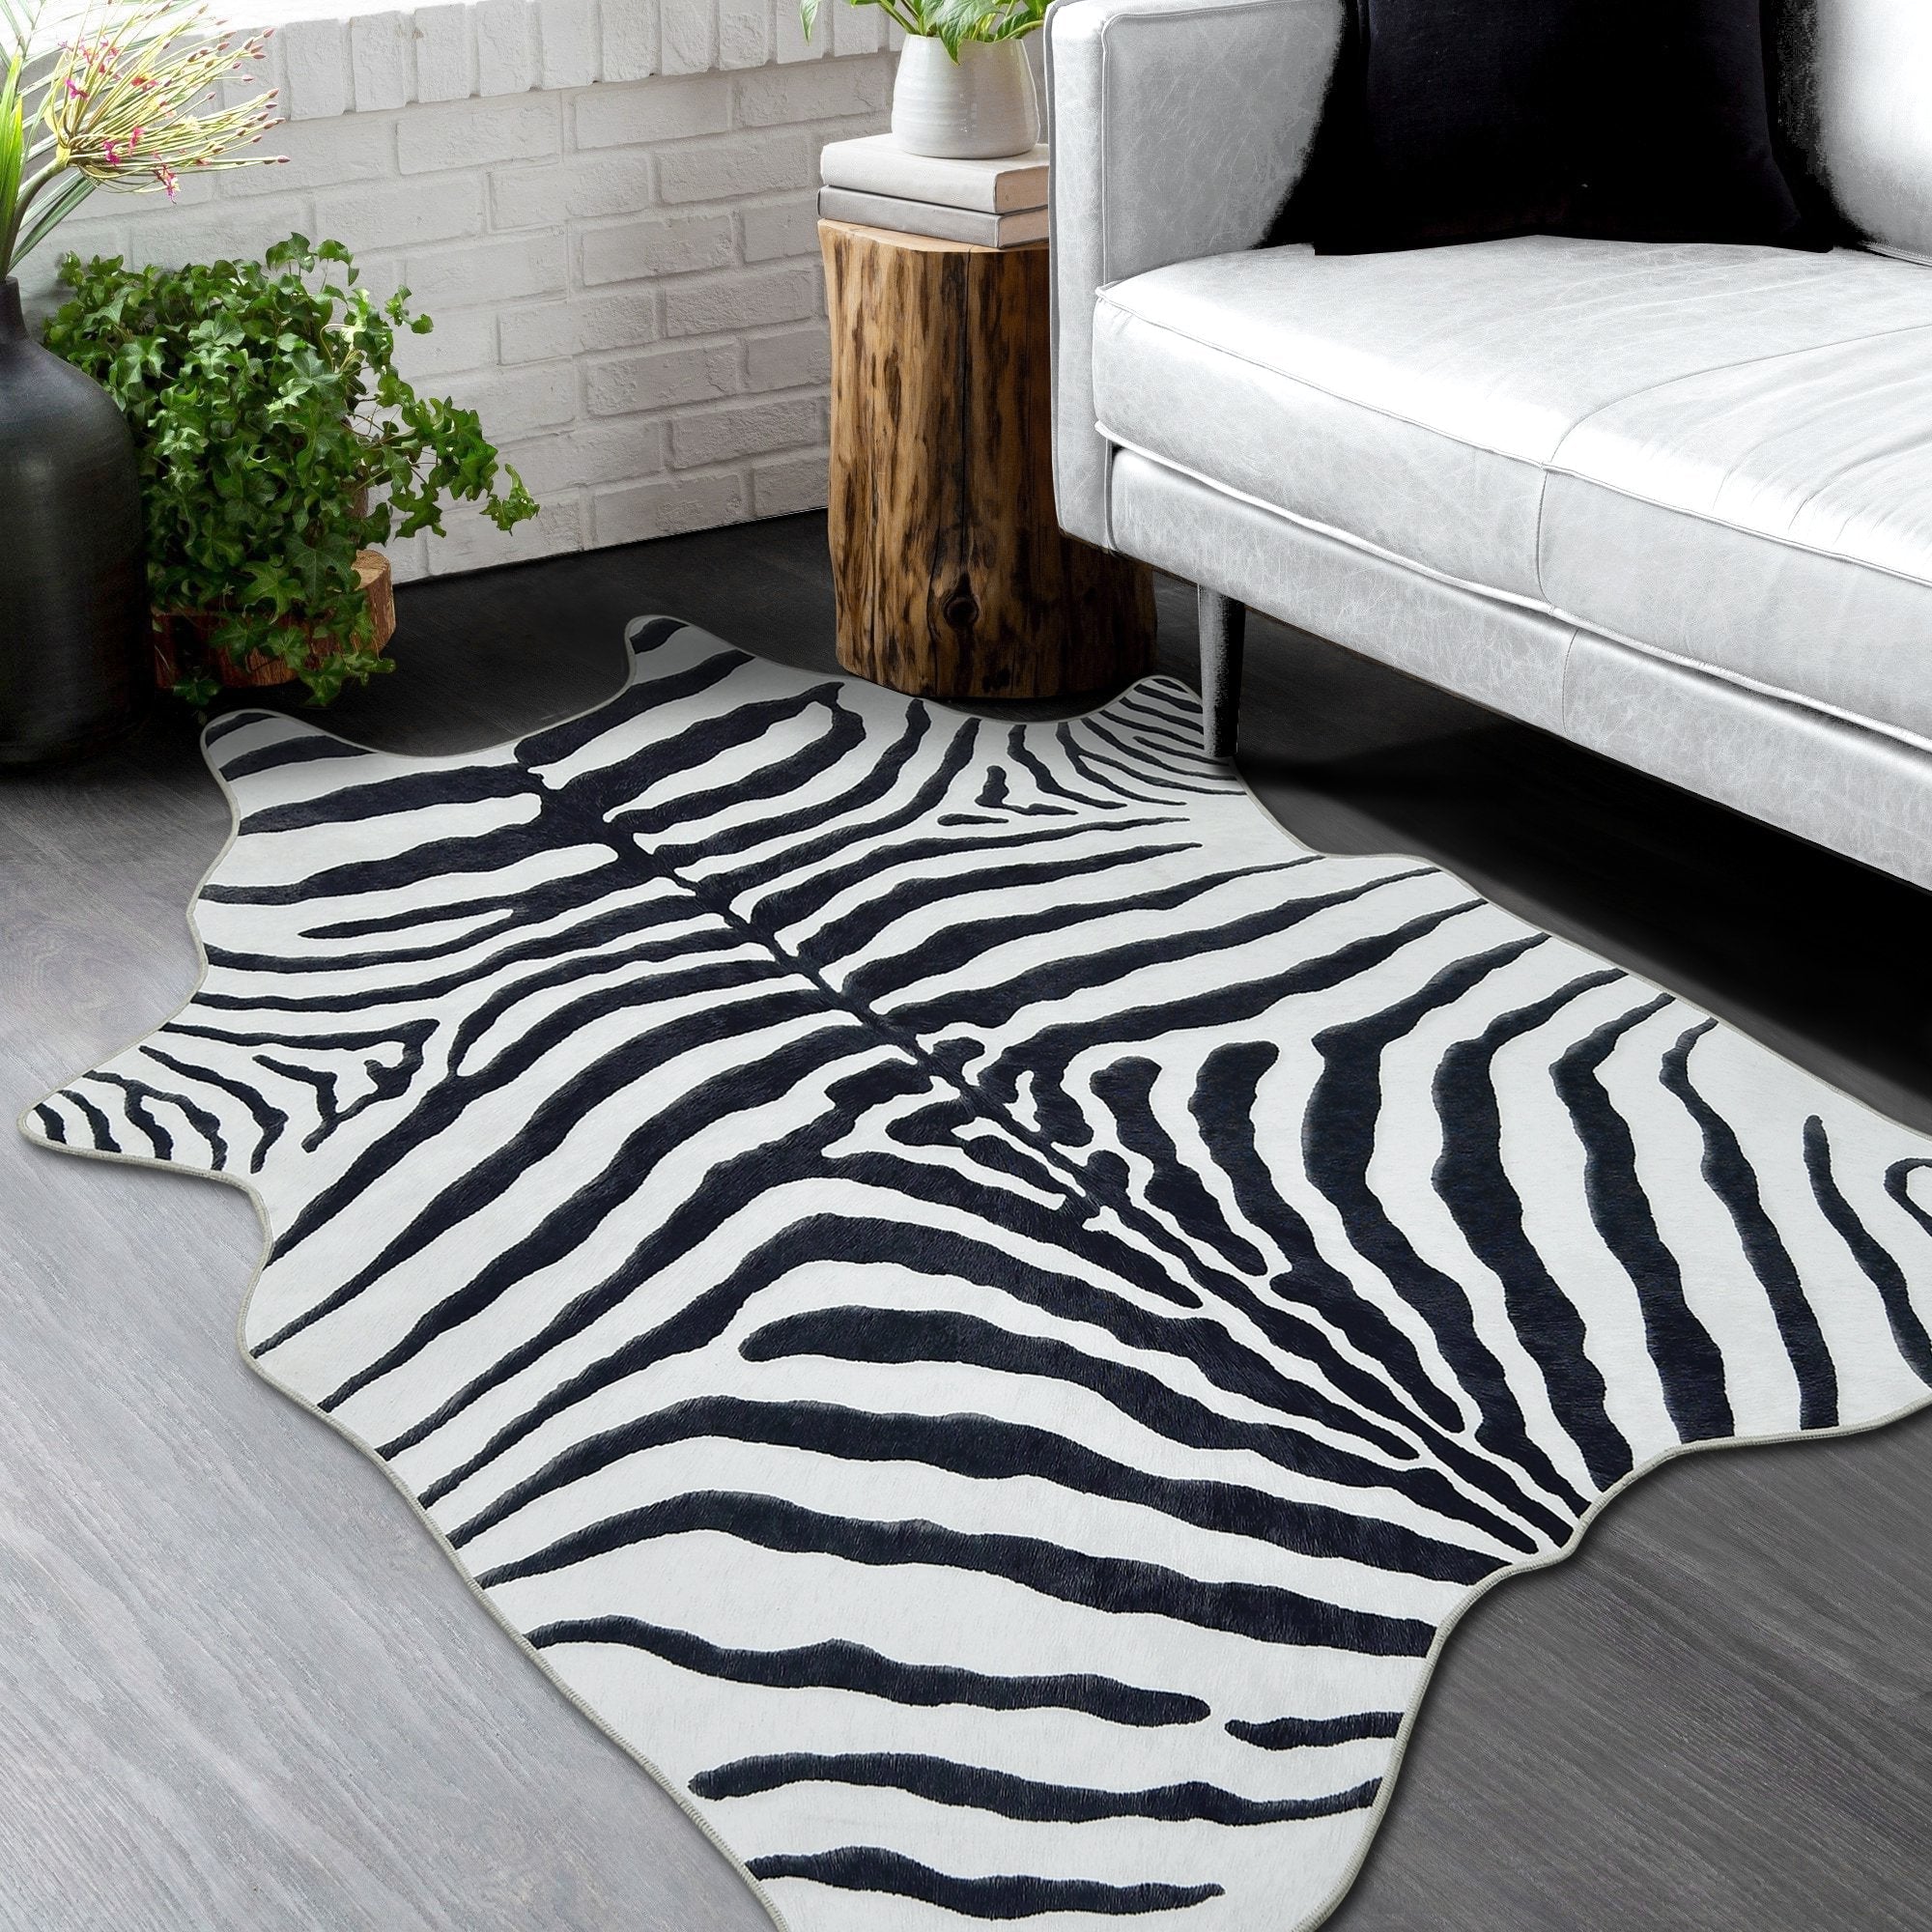 HR Premium Non-Slip Faux Cowhide Black and White Zebra Print Area Rug # 1122